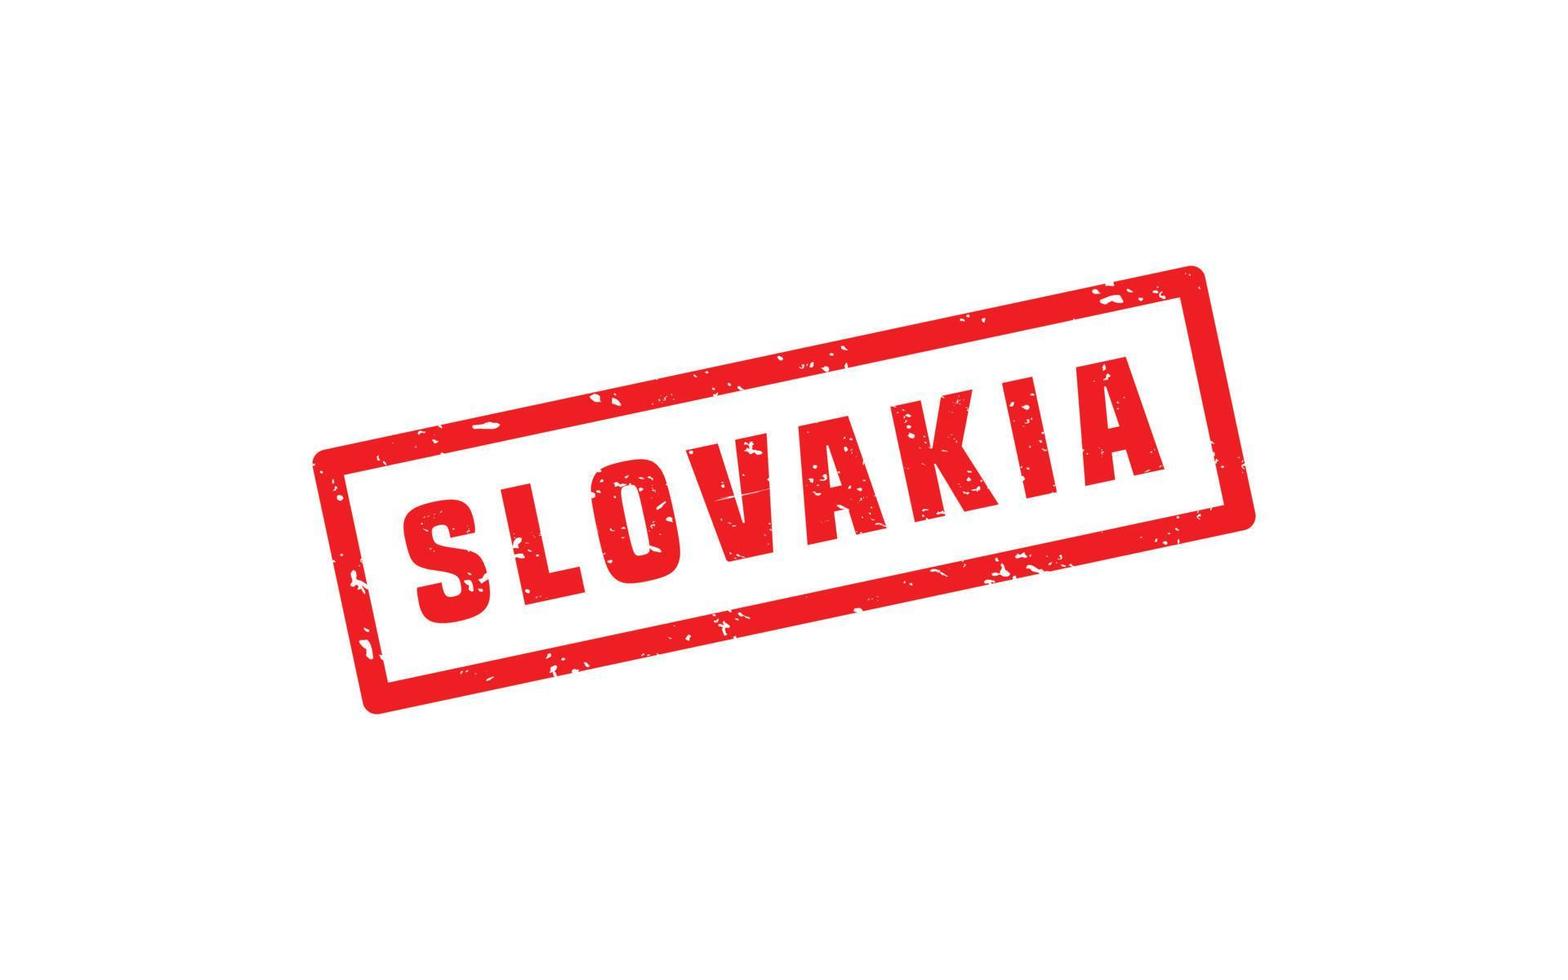 la slovaquie timbre caoutchouc avec grunge style sur blanc Contexte vecteur